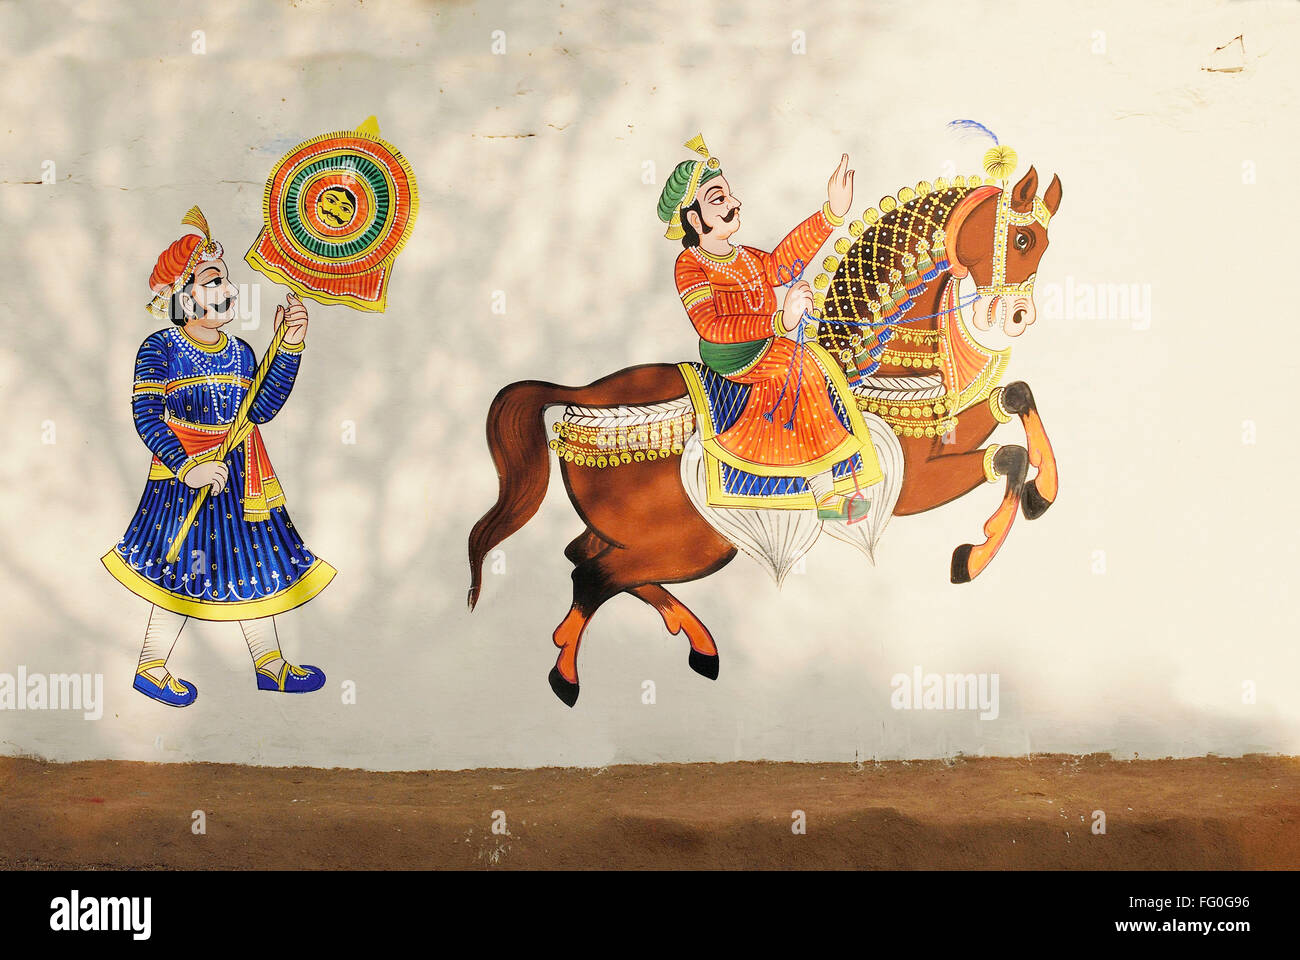 Peinture murale de cheval à Udaipur Rajasthan Inde Shilpgram Banque D'Images